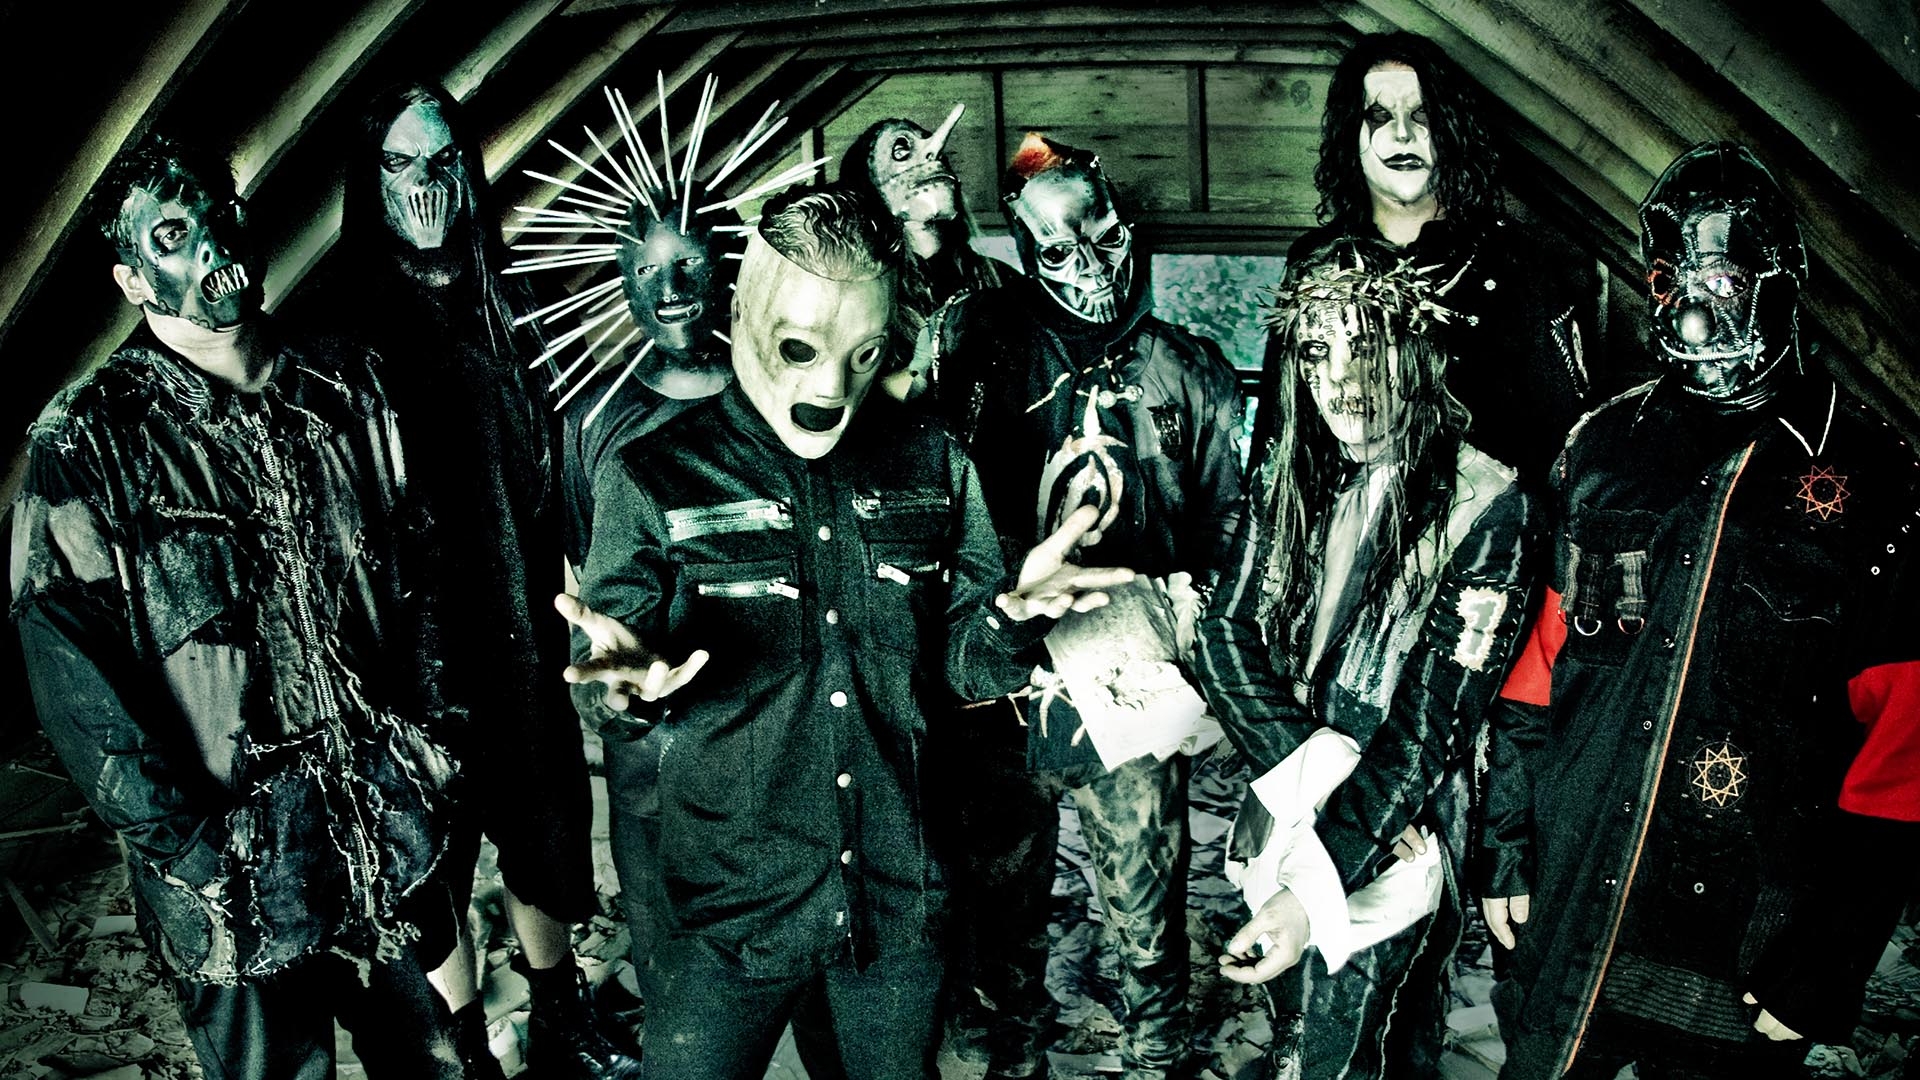 Wallpaper Slipknot Masks Image Attic Fear Full